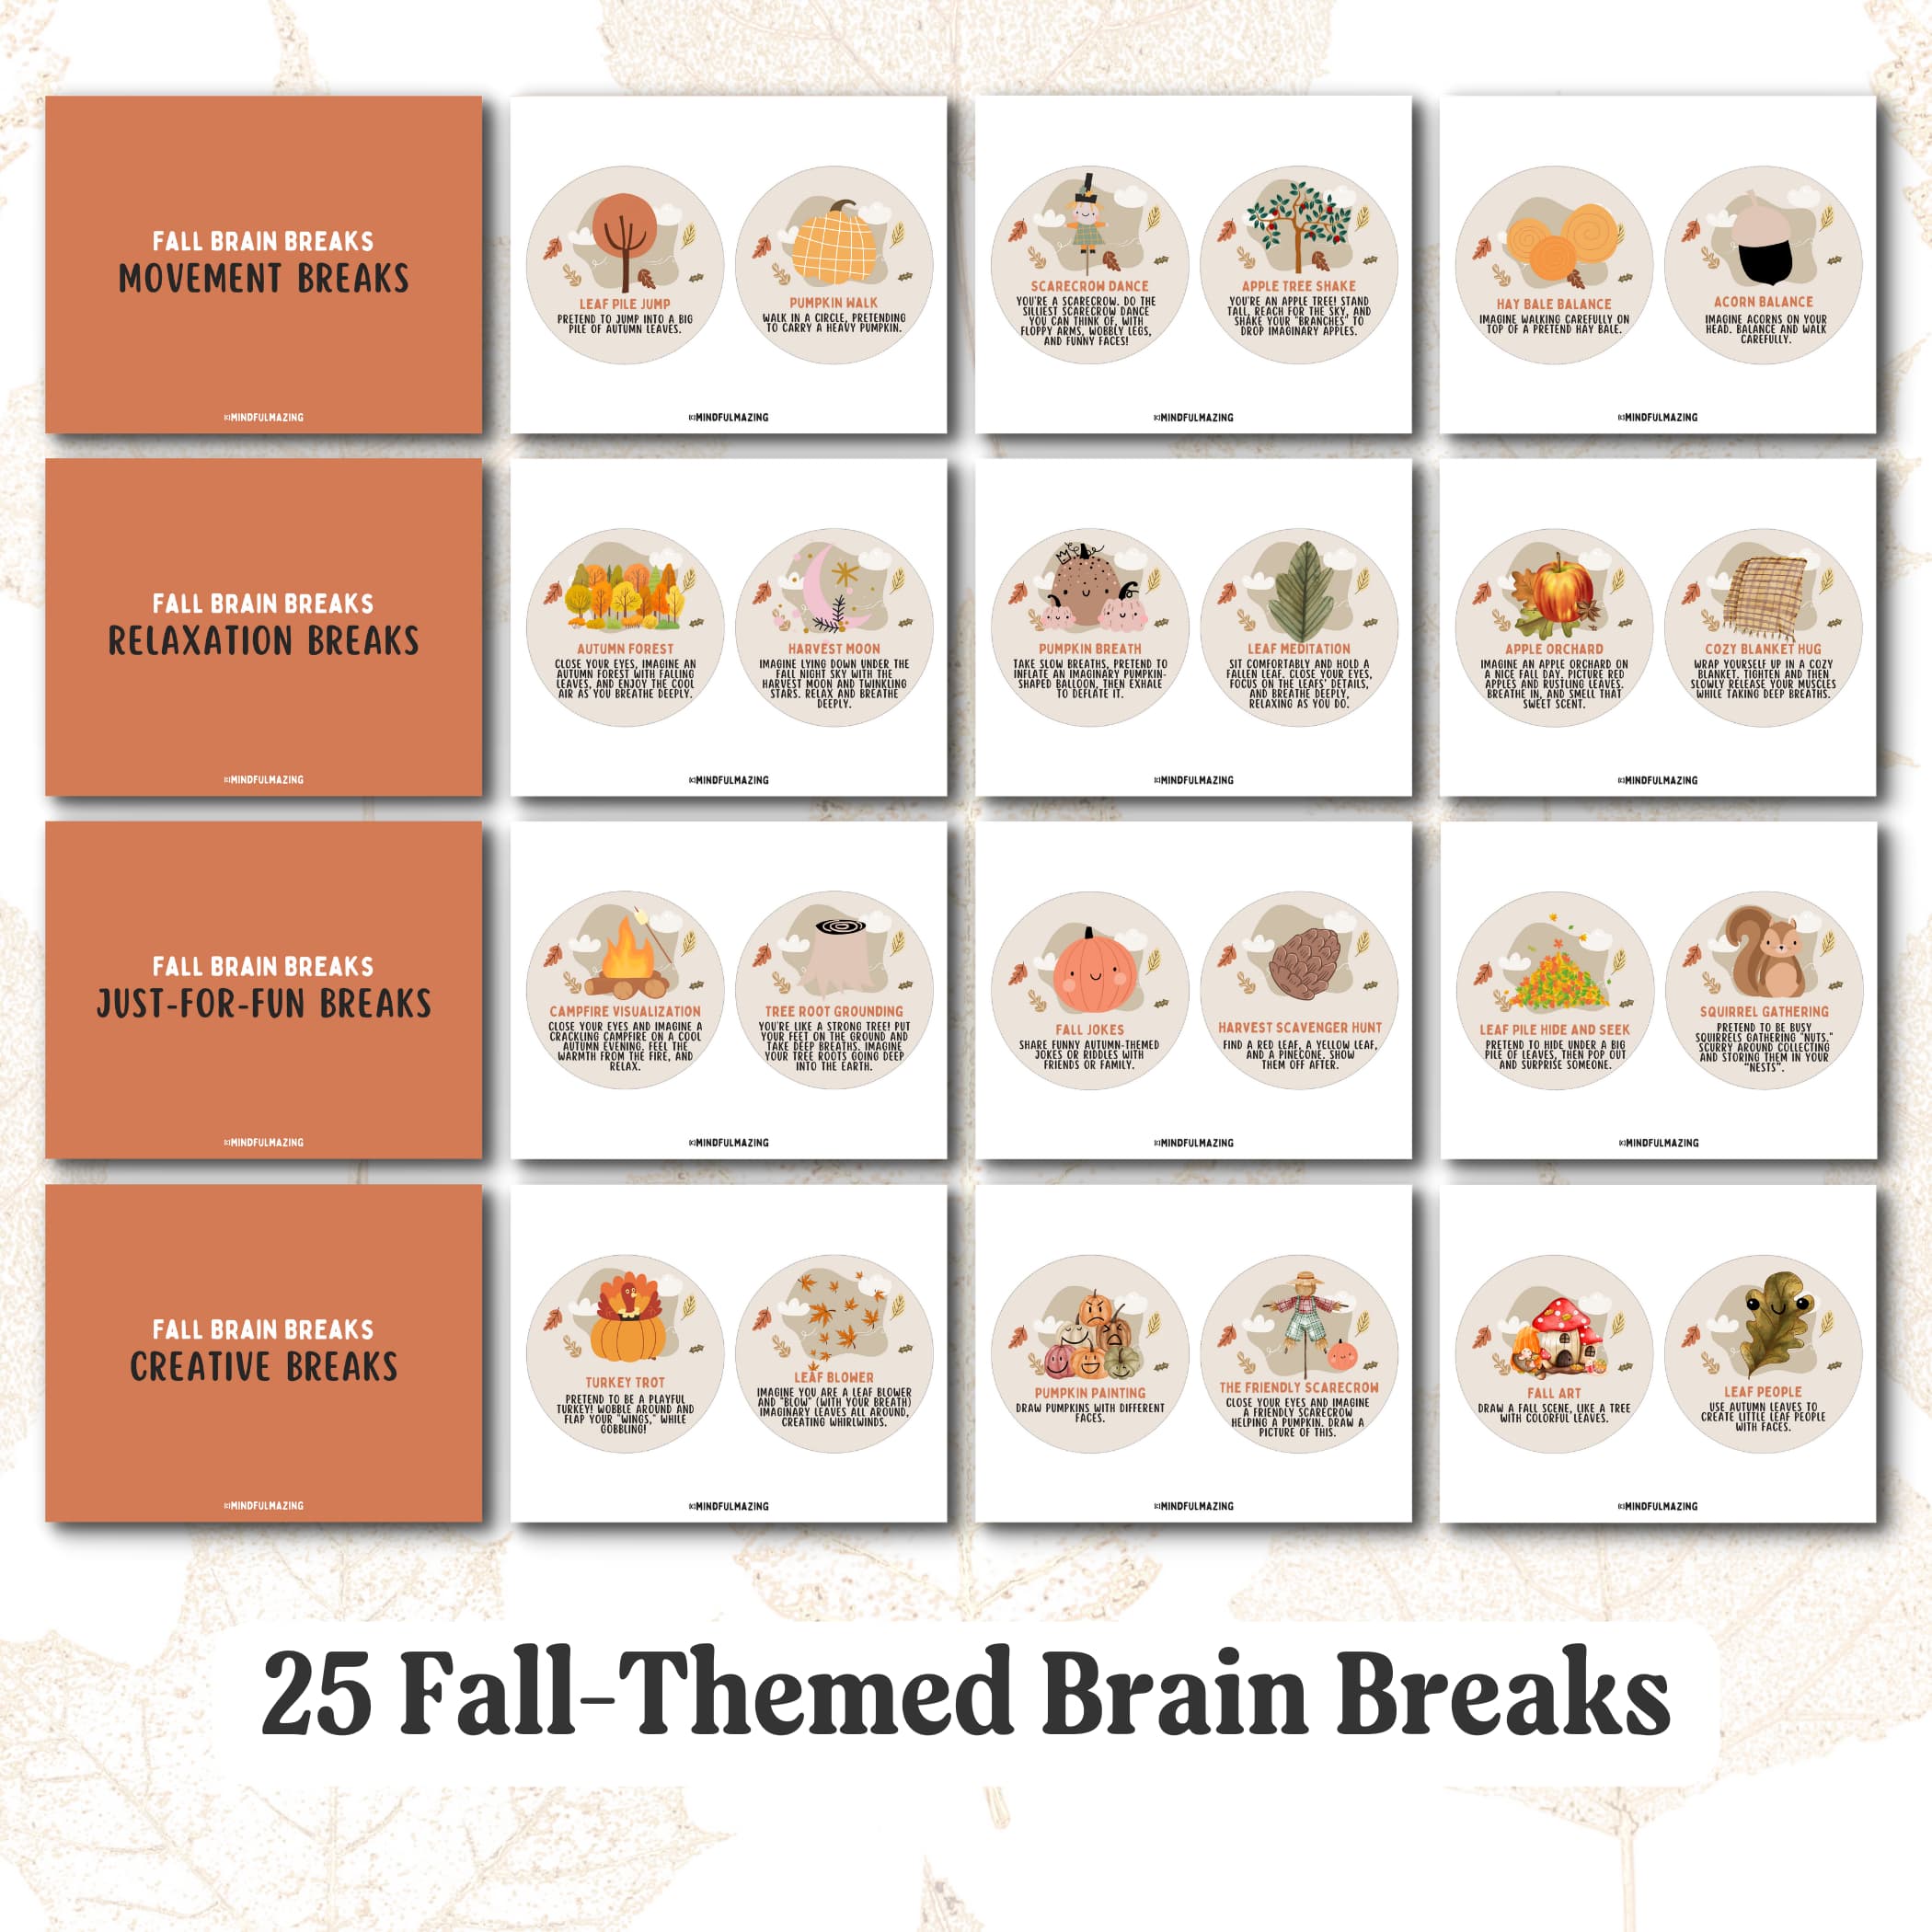 Fall-themed Brain Breaks